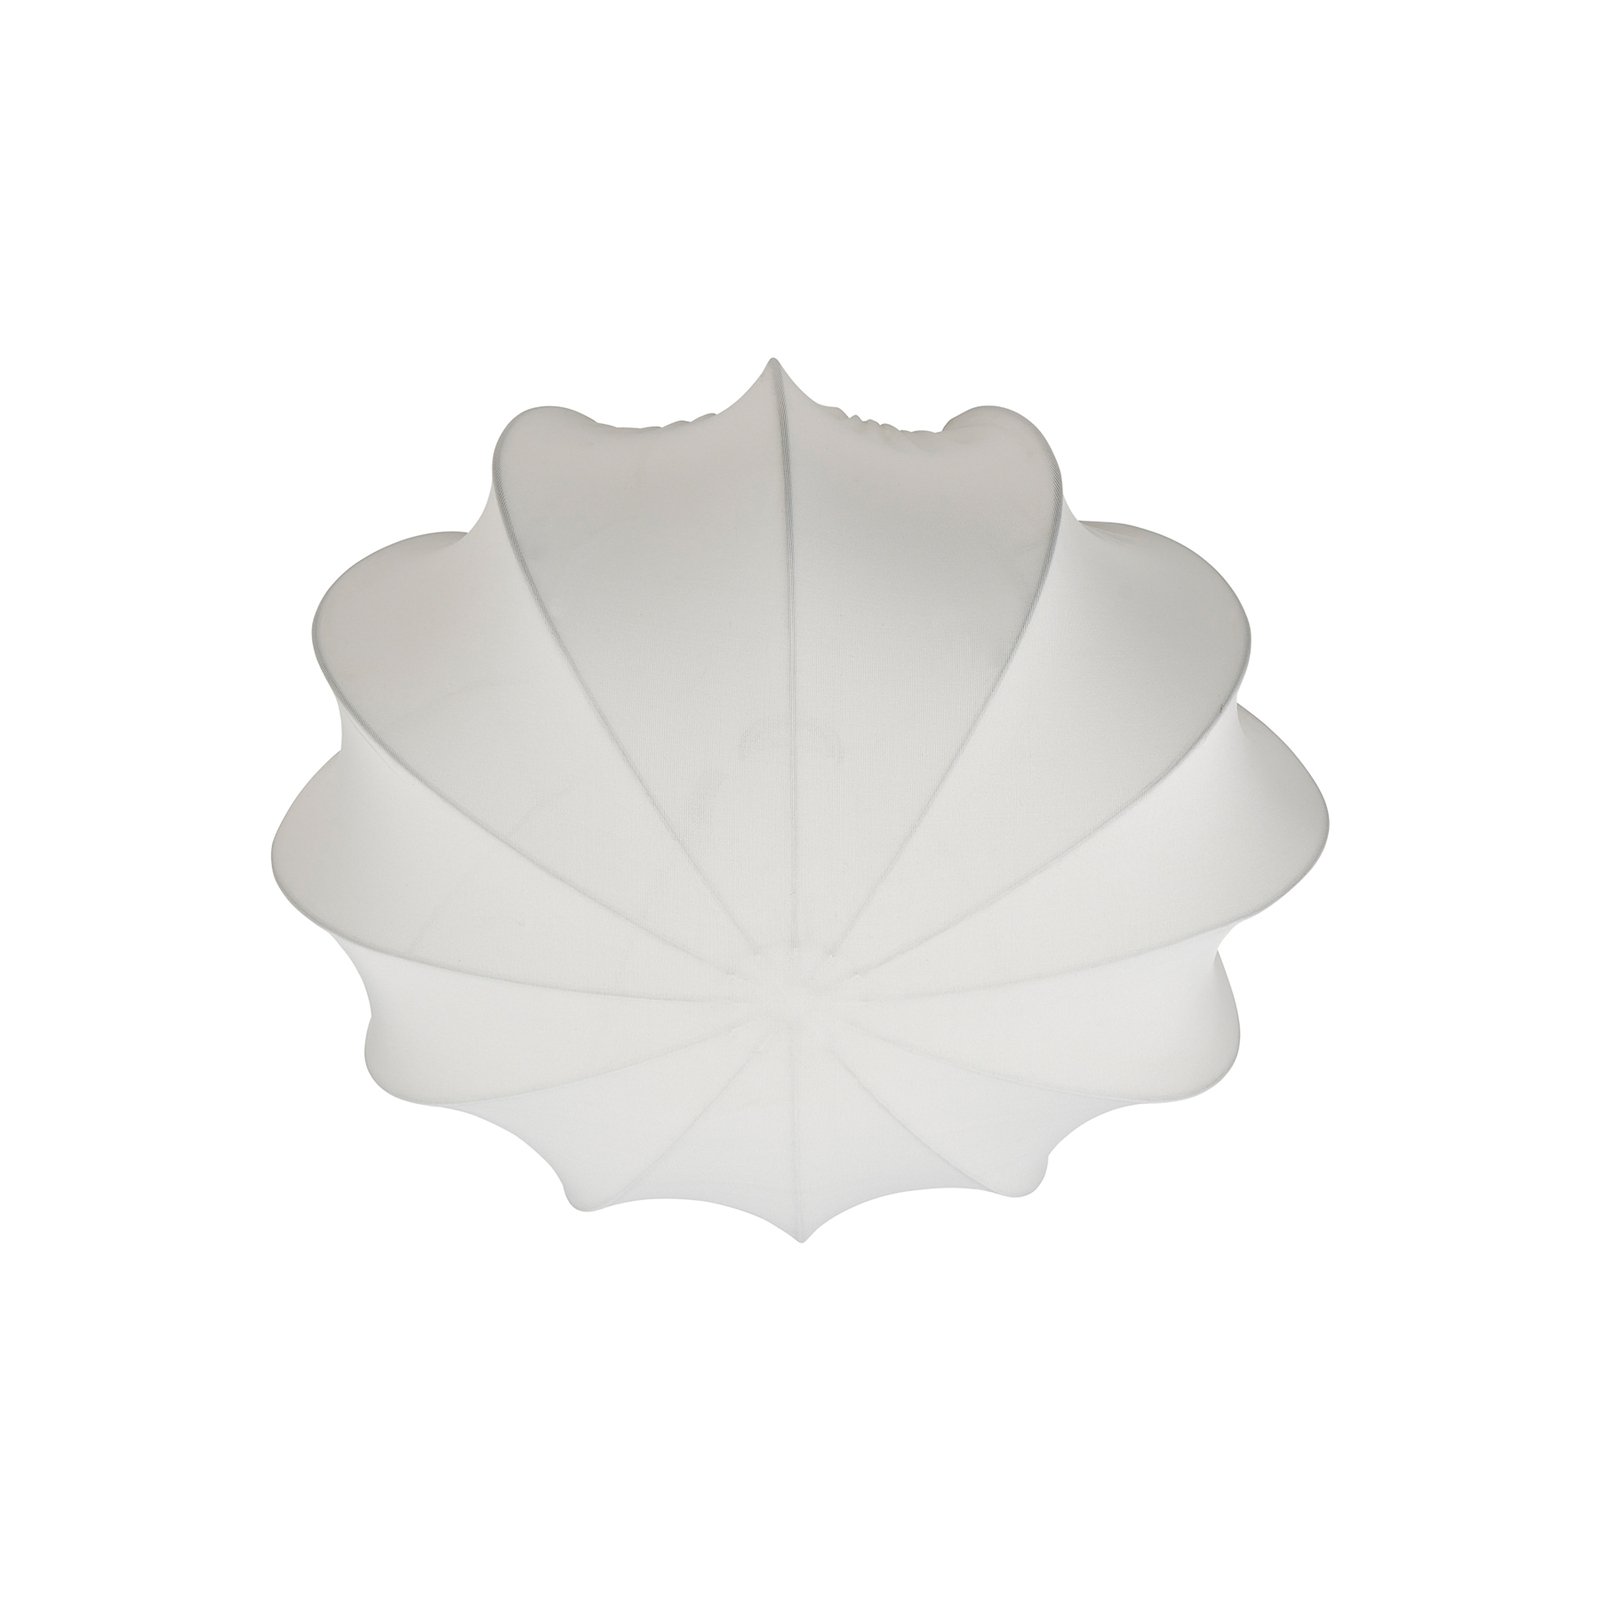 Lampa sufitowa Aeron, tekstylna, biała, średnica 40 cm